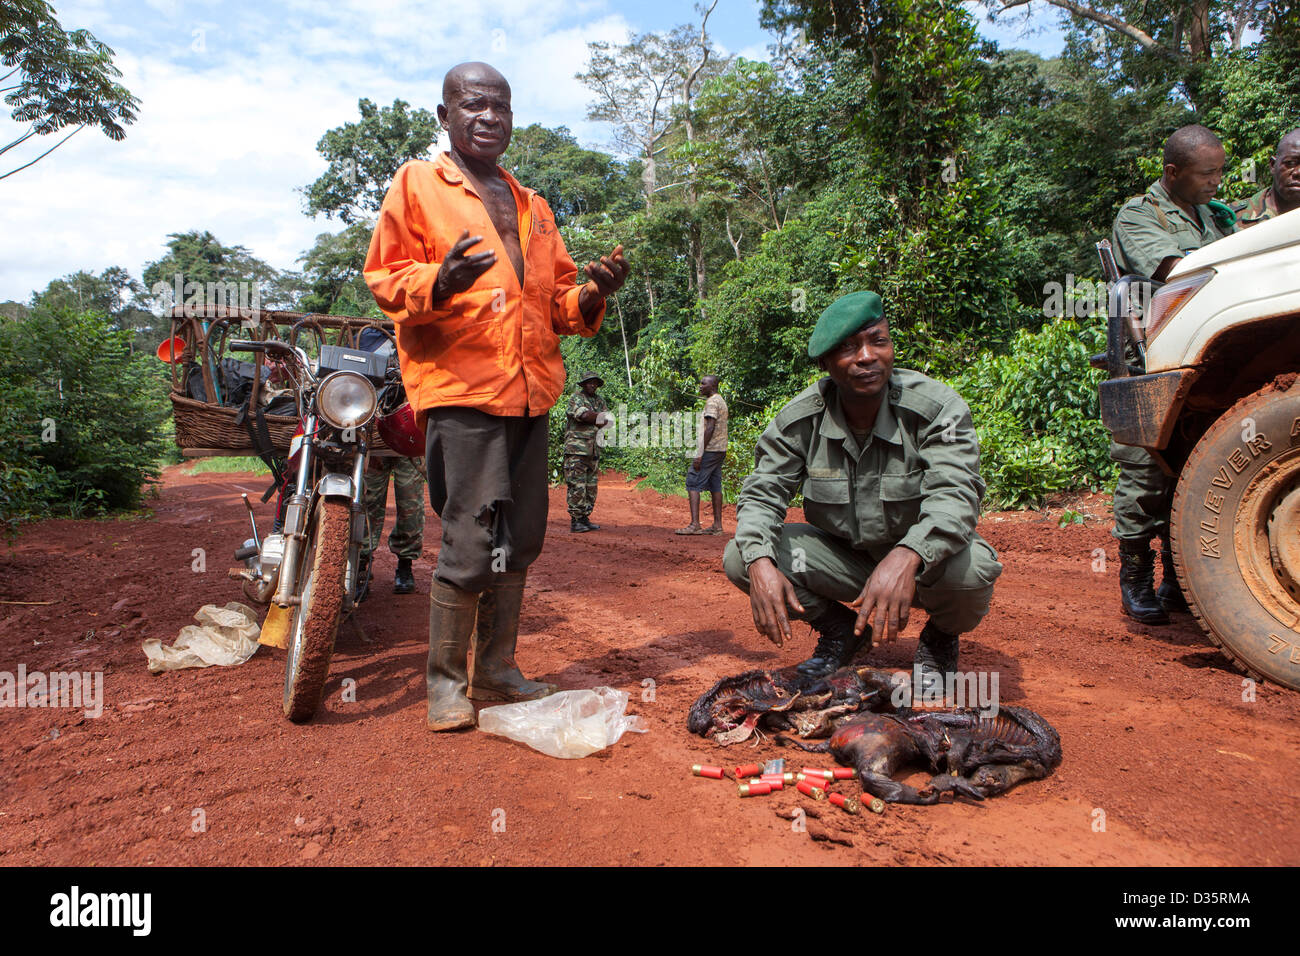 Kongo, 27. September 2012: Ecoguards stoppen einen Wilderer mit Buschfleisch. Keine Jagd ist in diesem Bereich erlaubt. Stockfoto